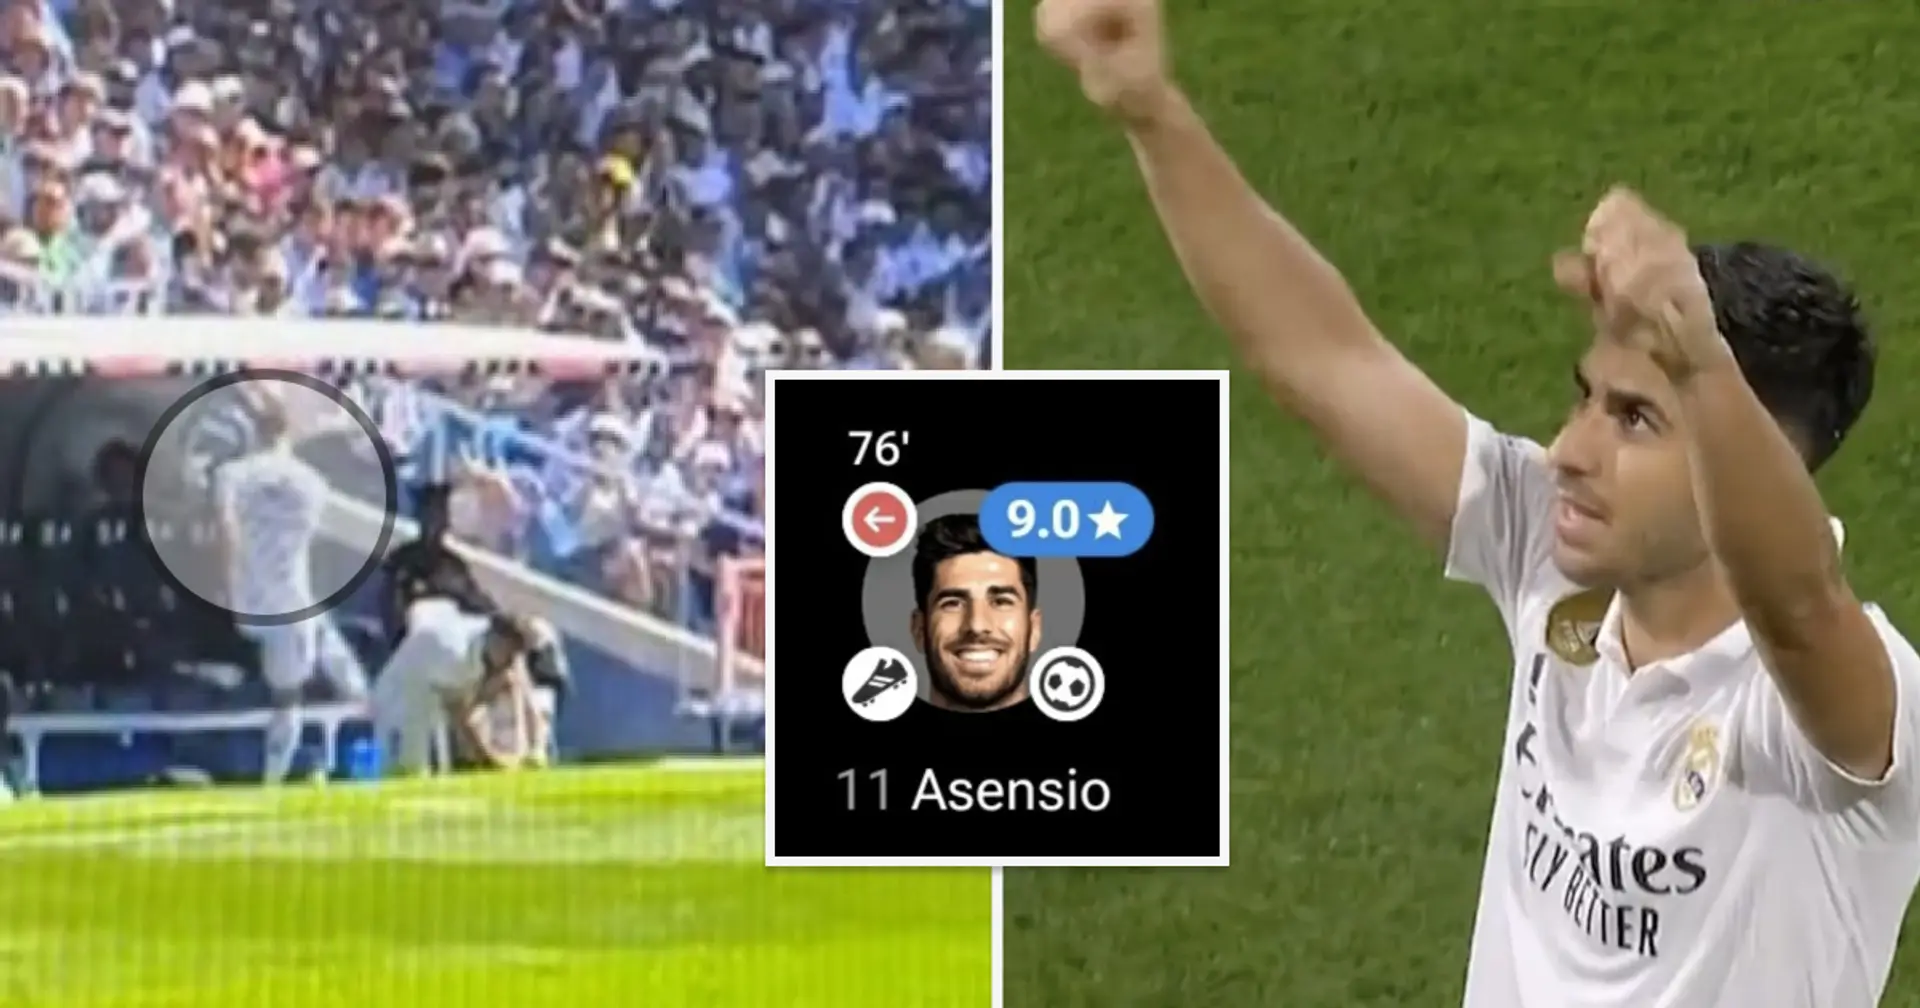 "Seitdem ist er nicht mehr derselbe": Fan zeigt den genauen Moment, als Asensio wieder anfing zu glänzen 